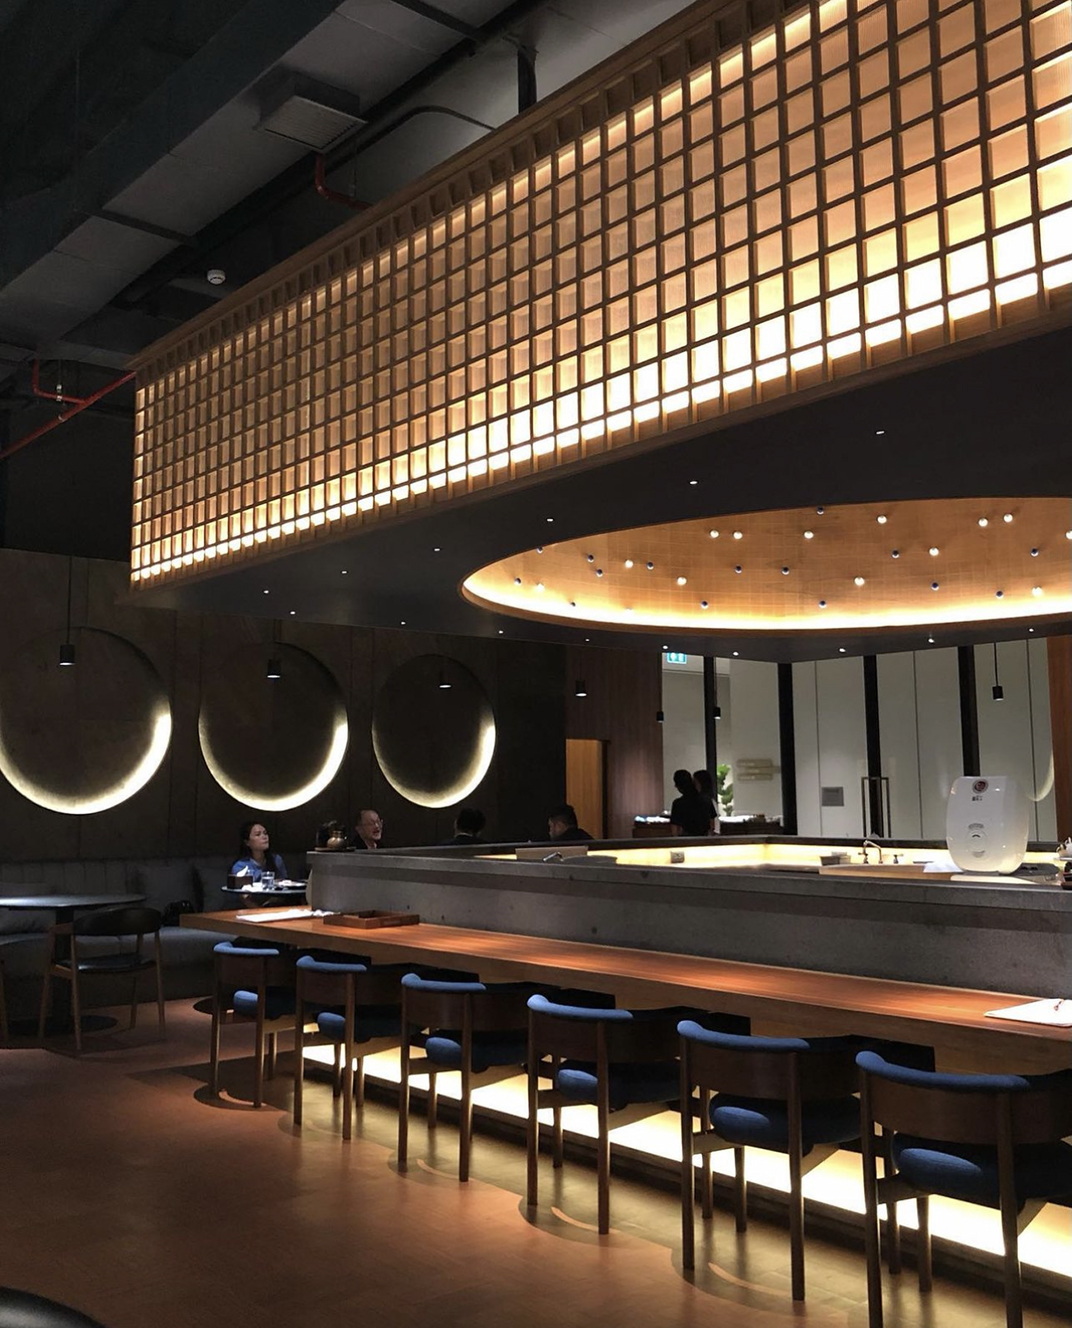 日式酒吧餐厅kinkibkk 泰国 曼谷 北京 上海 珠海 广州 武汉 杭州 佛山 香港 澳门 logo设计 vi设计 空间设计